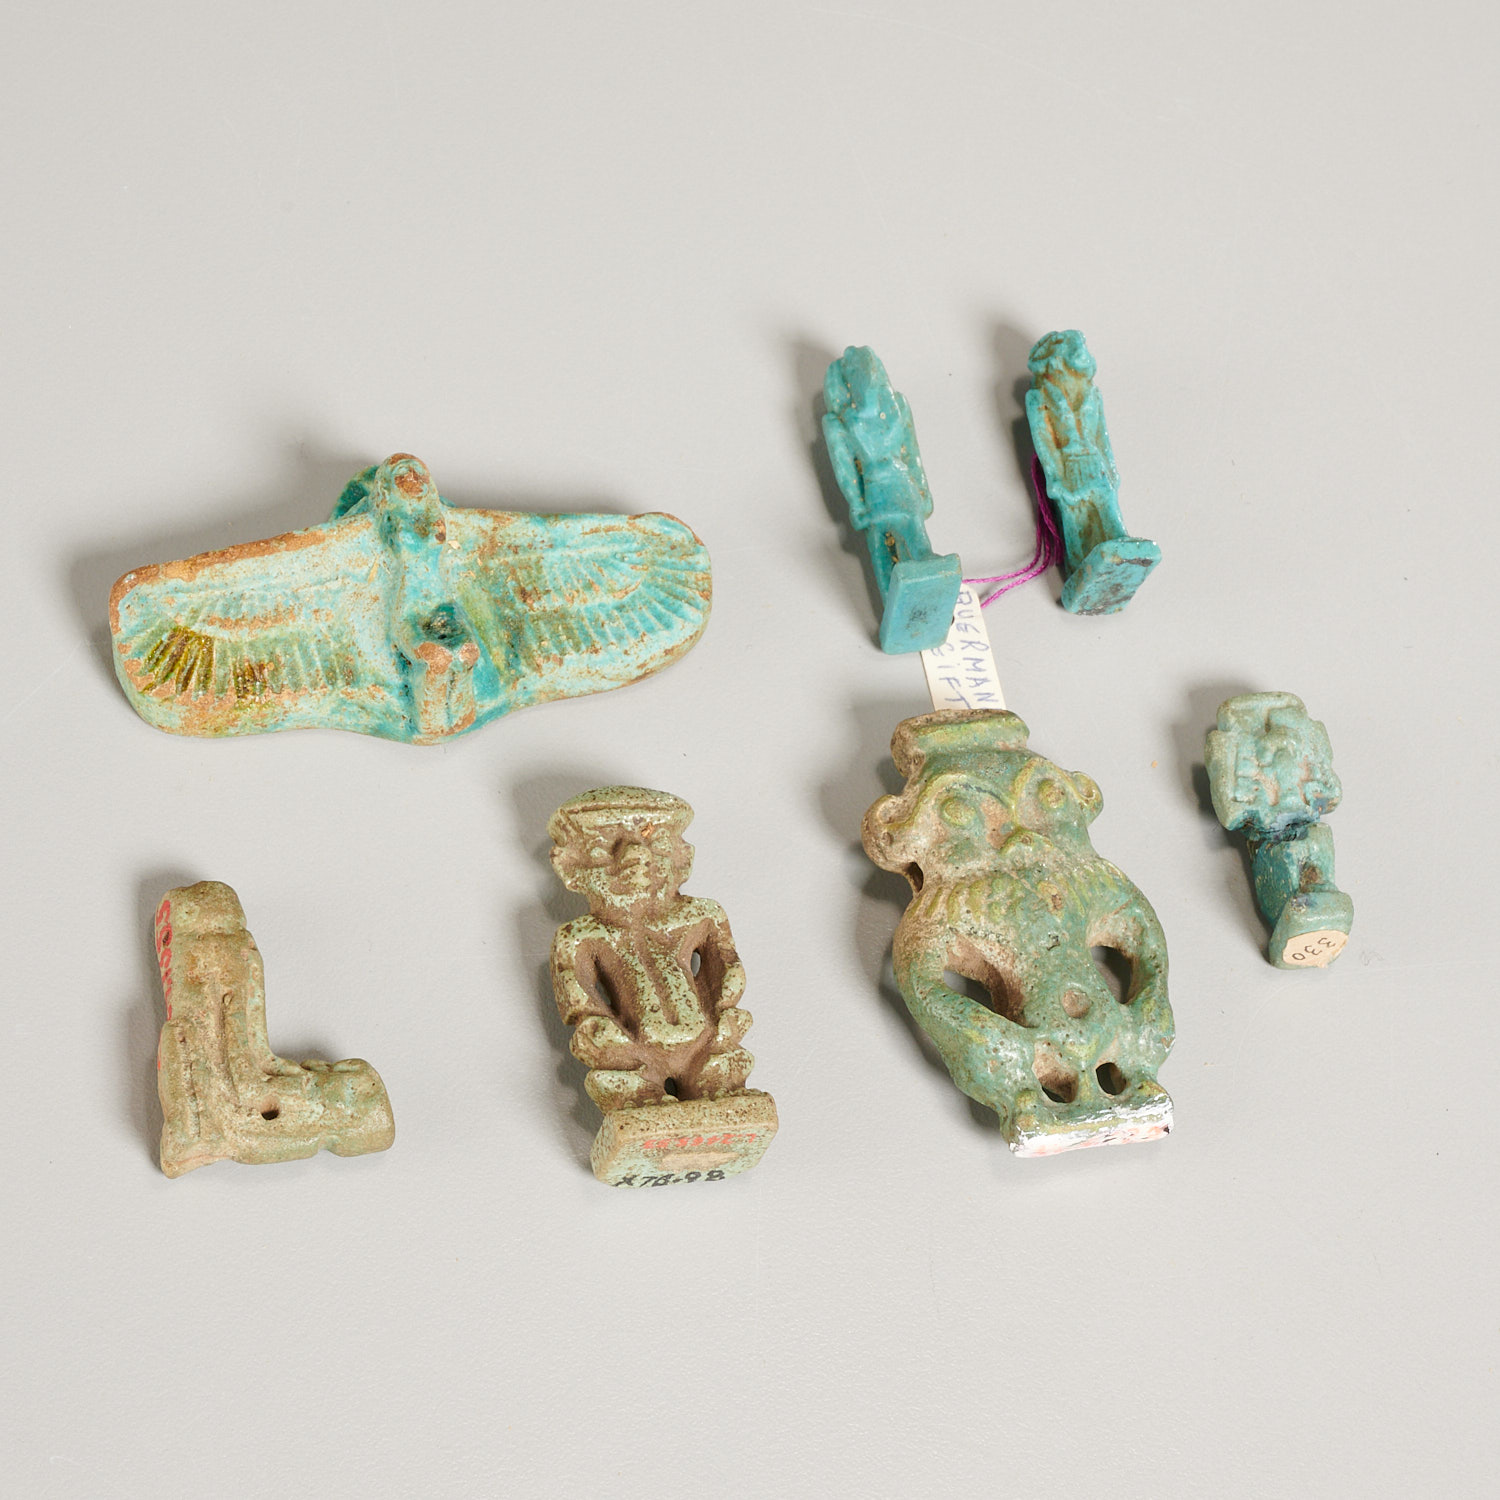  7 ANCIENT EGYPTIAN AMULETS EX MUSEUM 2ce9d9